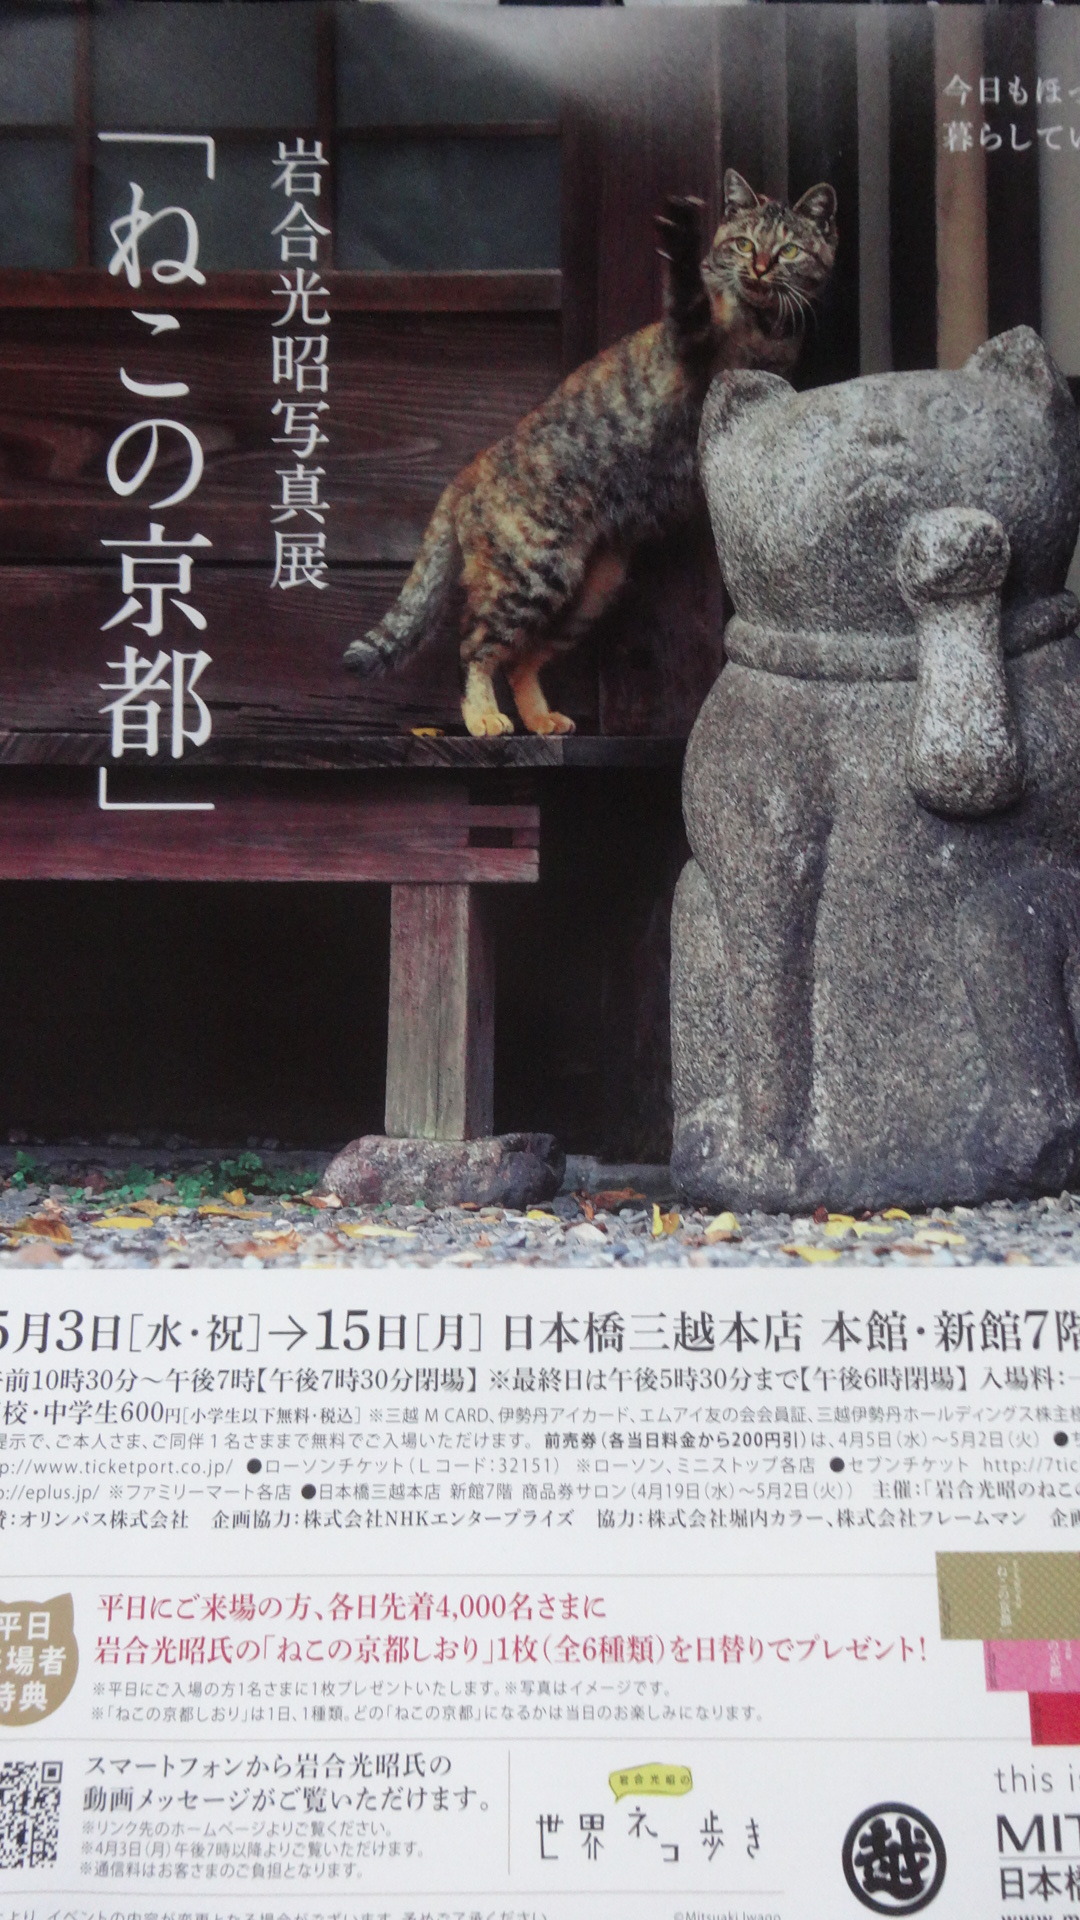 ねこの京都の四季 の写真展のポスター